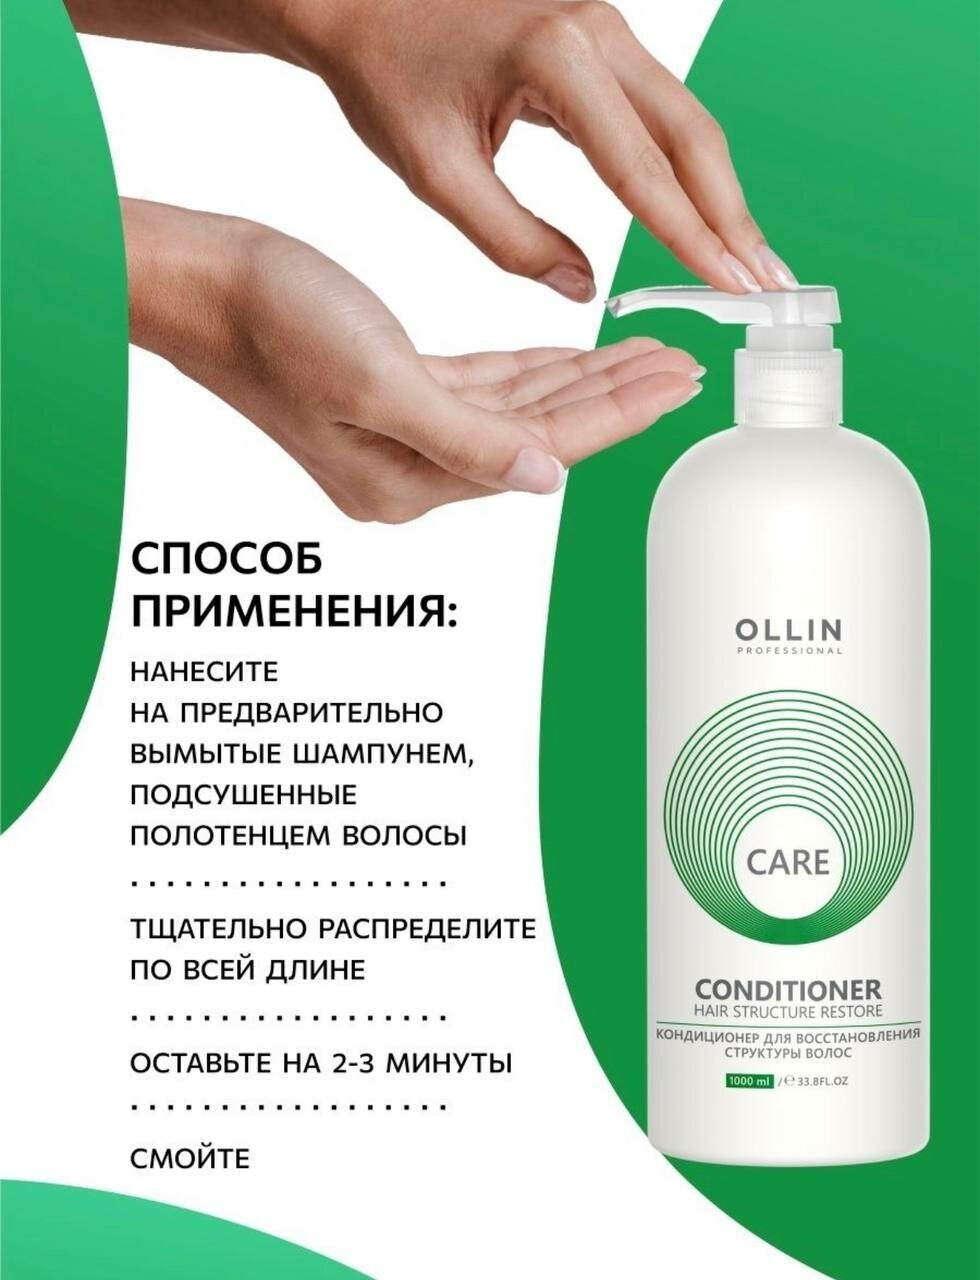 Ollin Professional Conditioner Кондиционер для восстановления структуры волос 200 мл (Ollin Professional, ) - фото №10